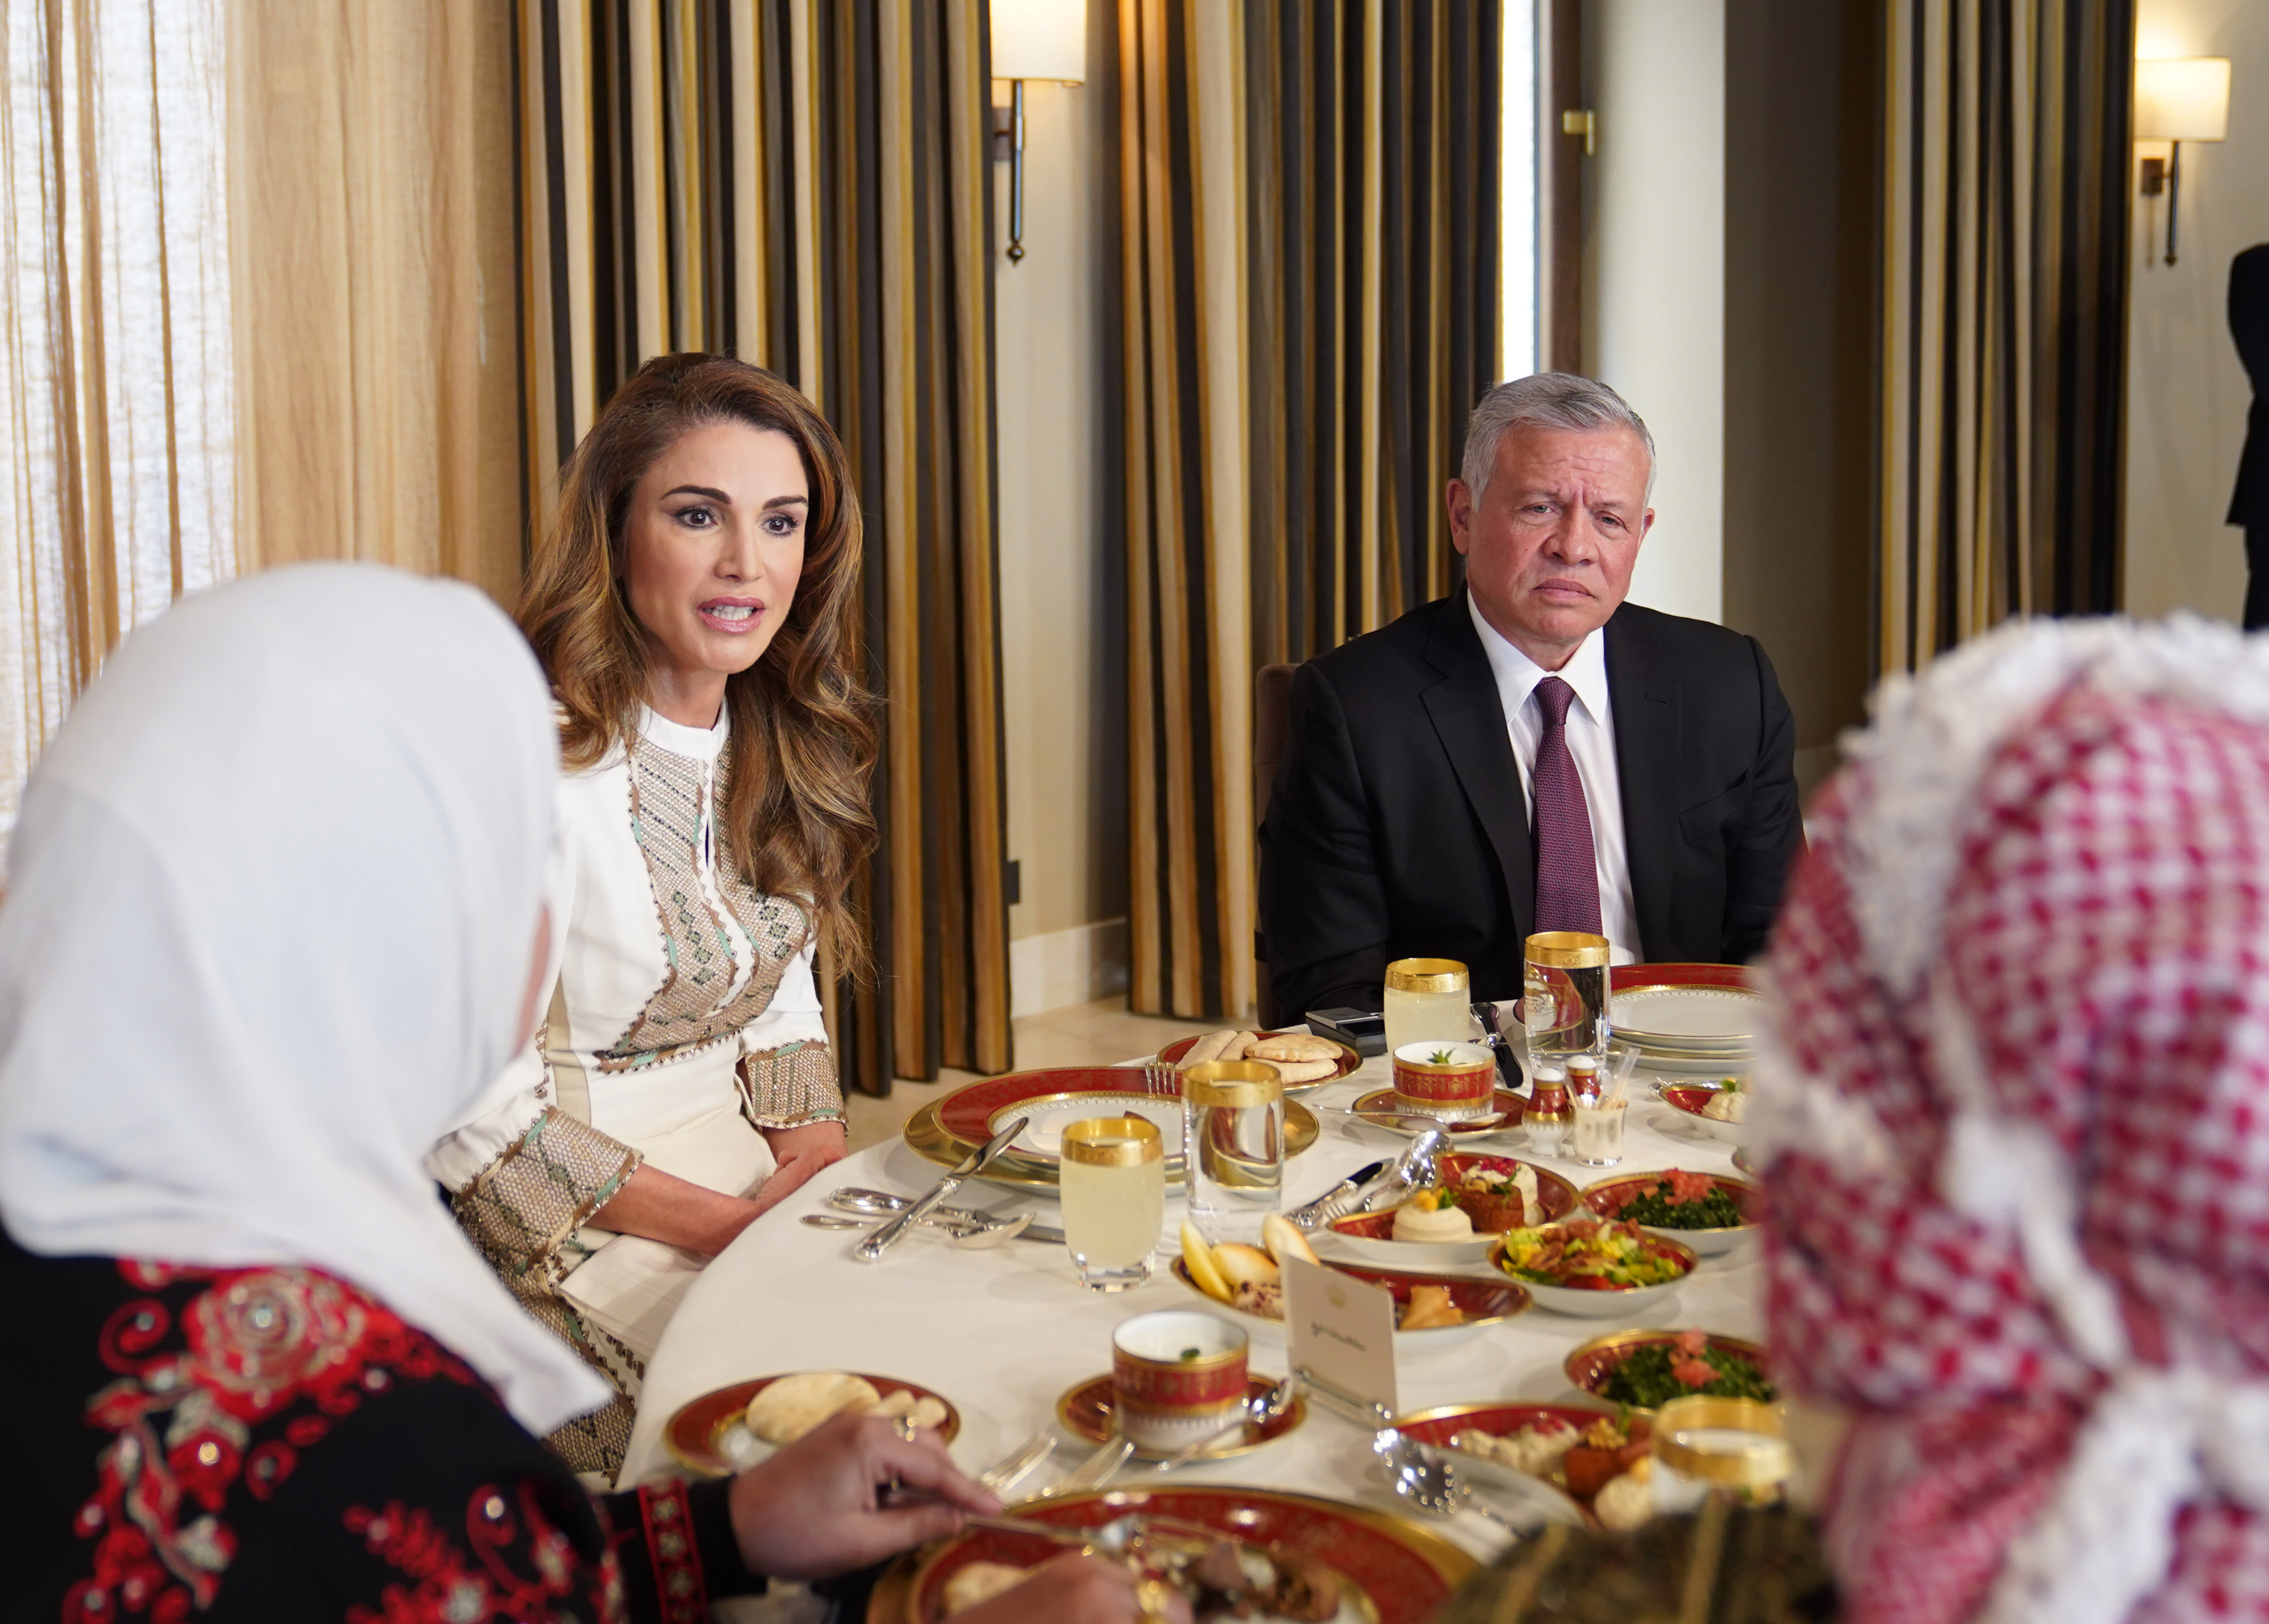 جلالة الملك عبدالله الثاني وجلالة الملكة رانيا العبدالله يلتقيان بسيدات أردنيات بمناسبة اليوم العالمي للمرأة 